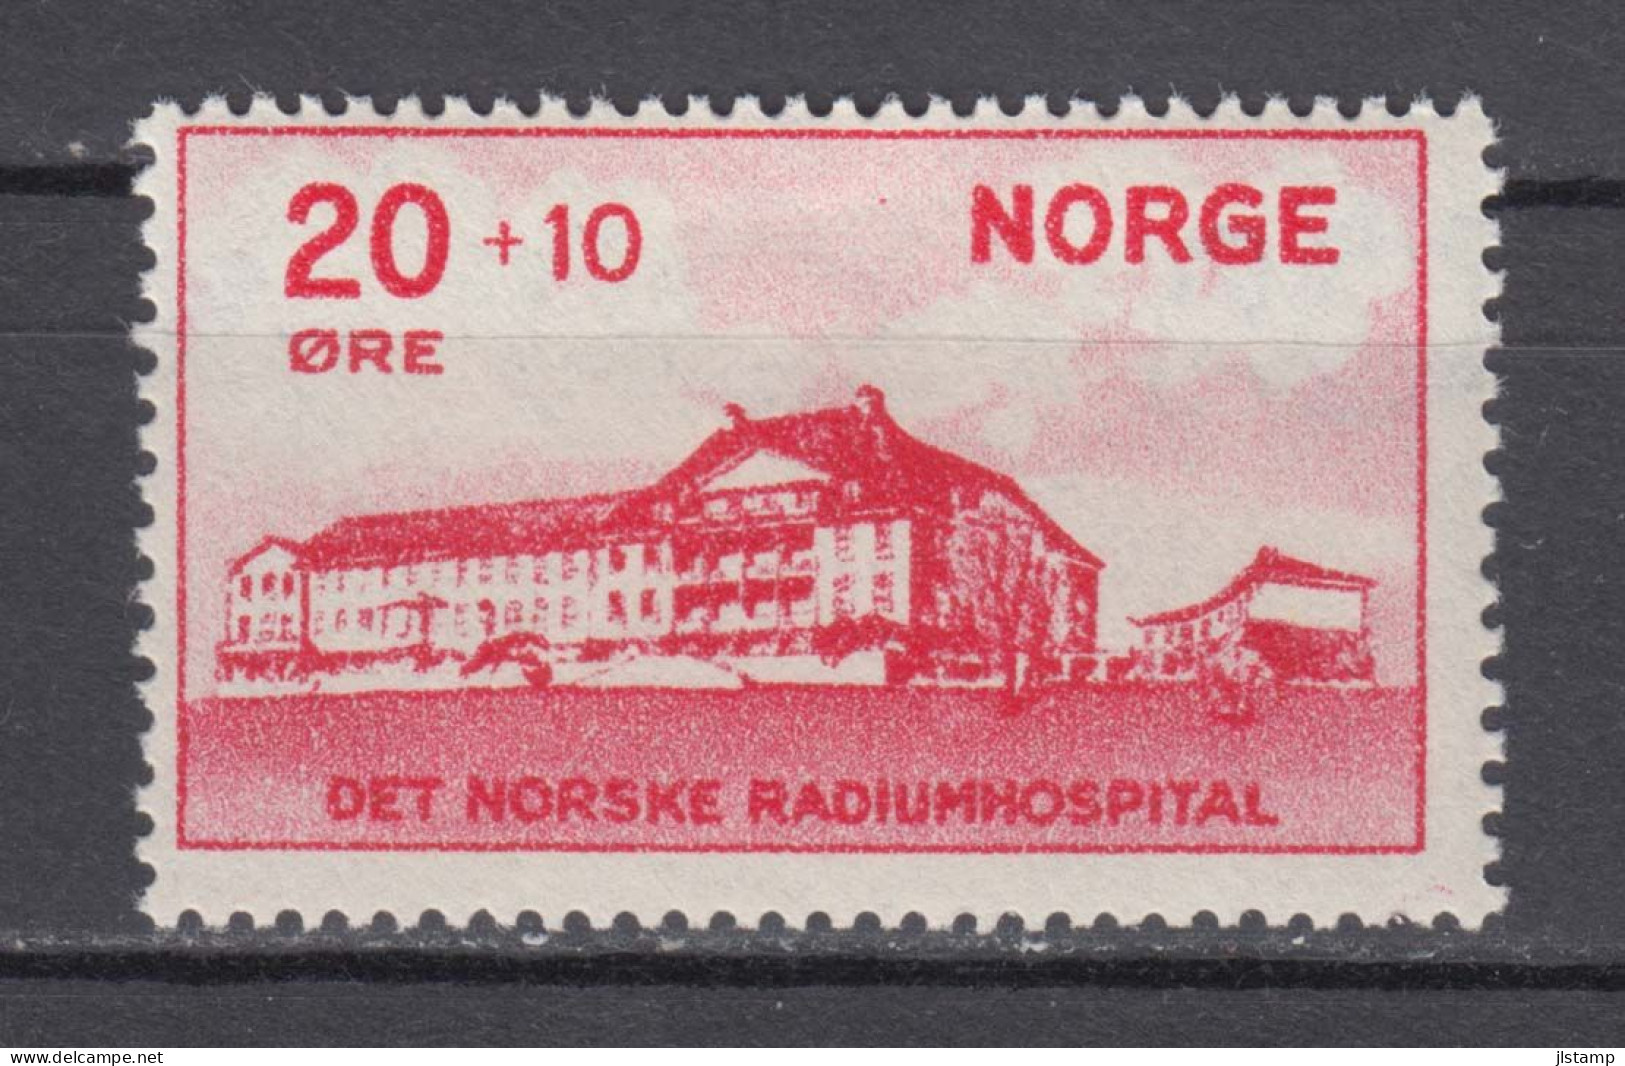 Norway 1931 Radium Hospital Set,MLH,OG,VF,Scott# B4 - Ungebraucht